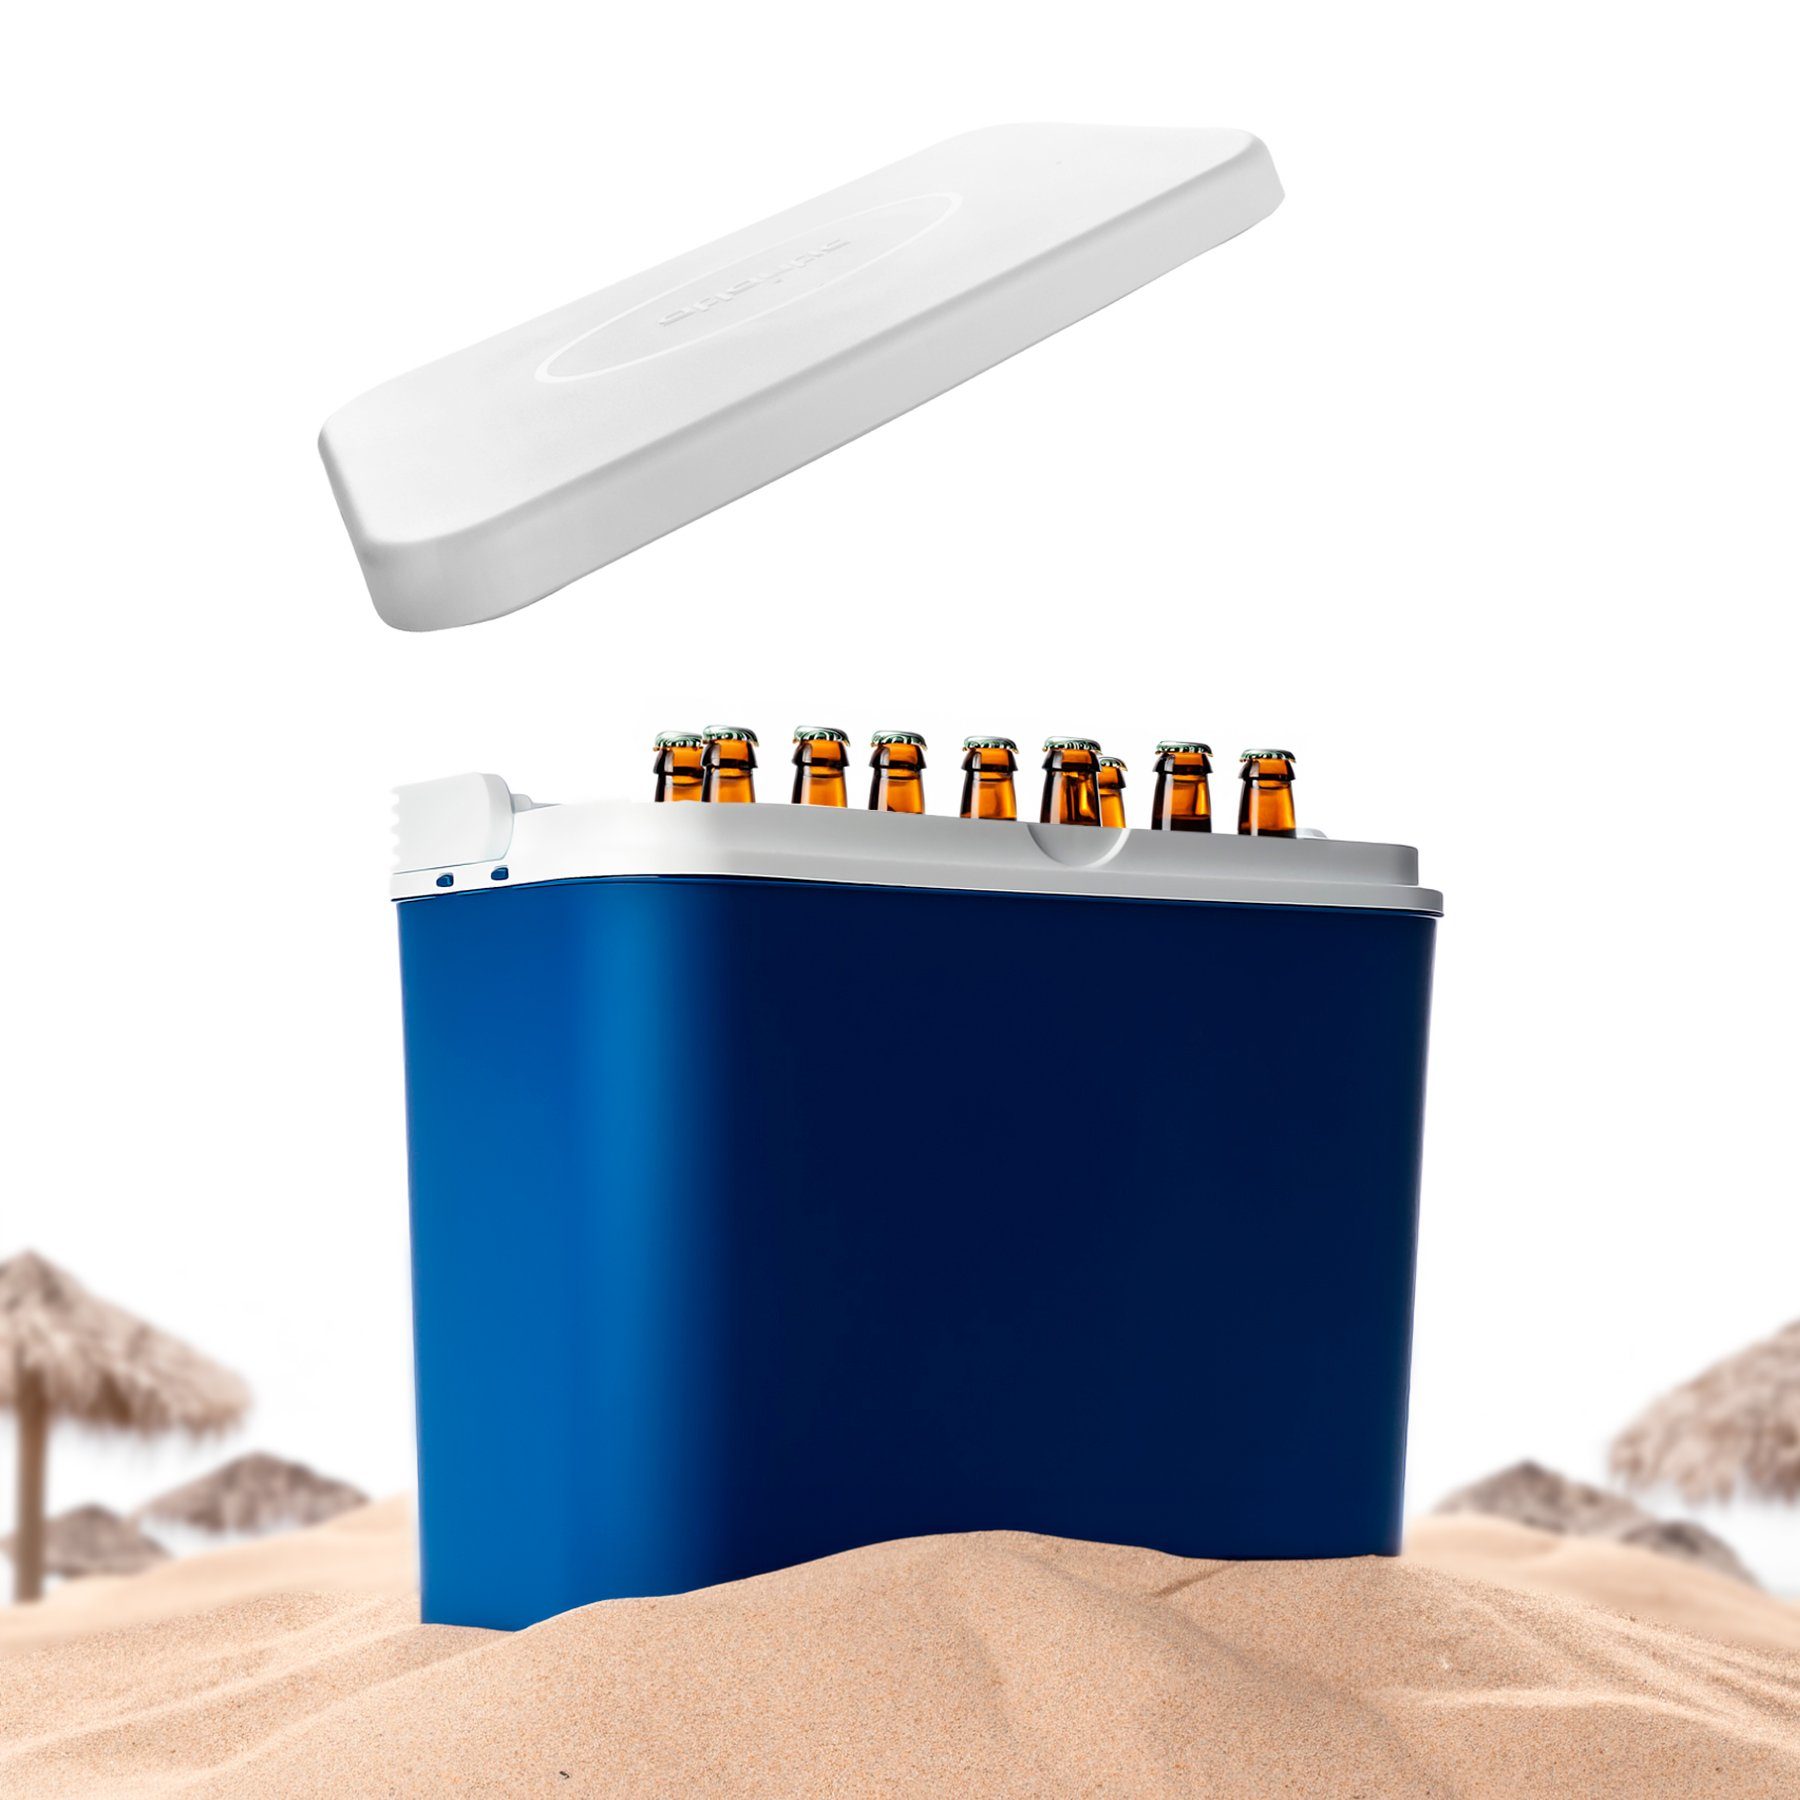 Kühlboxen Set 24L PP-Kunststoff, + (2-tlg) BigDean Made Thermobehälter in 10L EU, Blau/weiß Gefrierbox Kühltasche